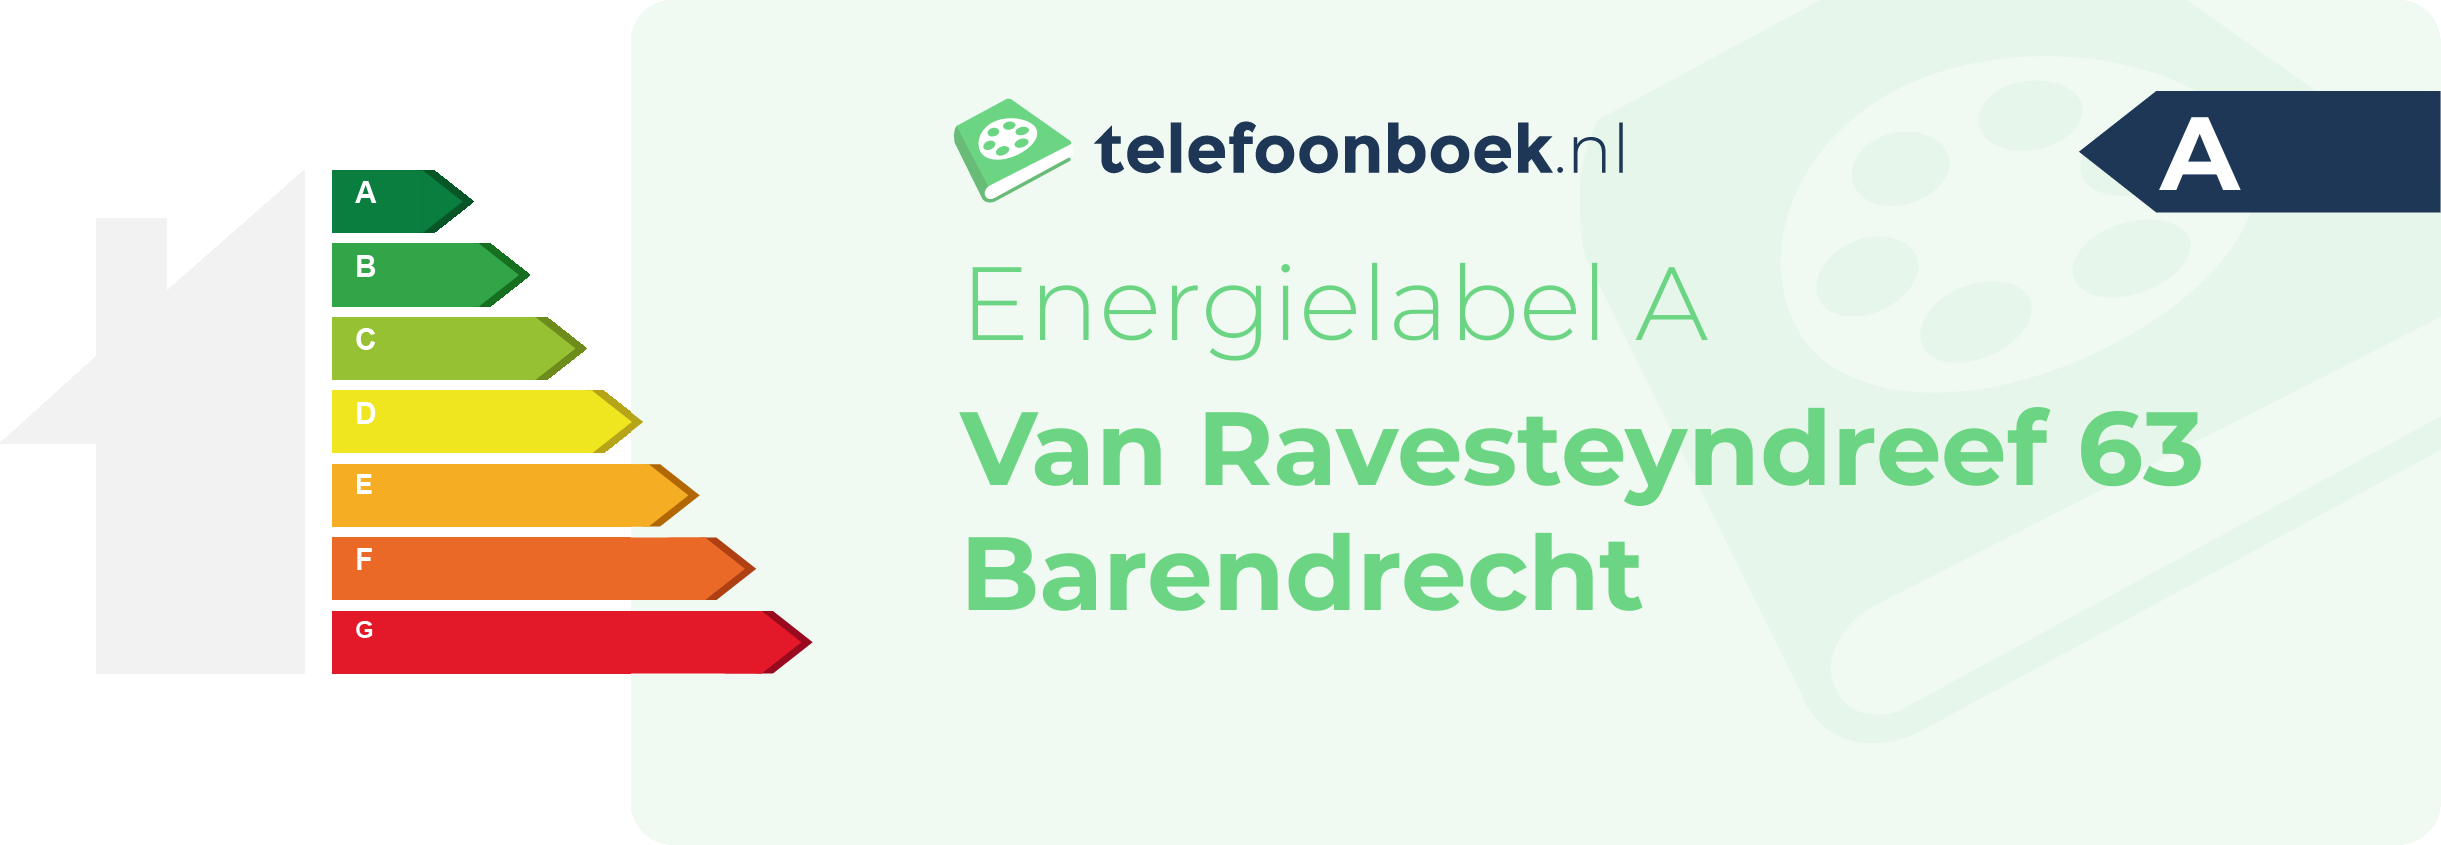 Energielabel Van Ravesteyndreef 63 Barendrecht